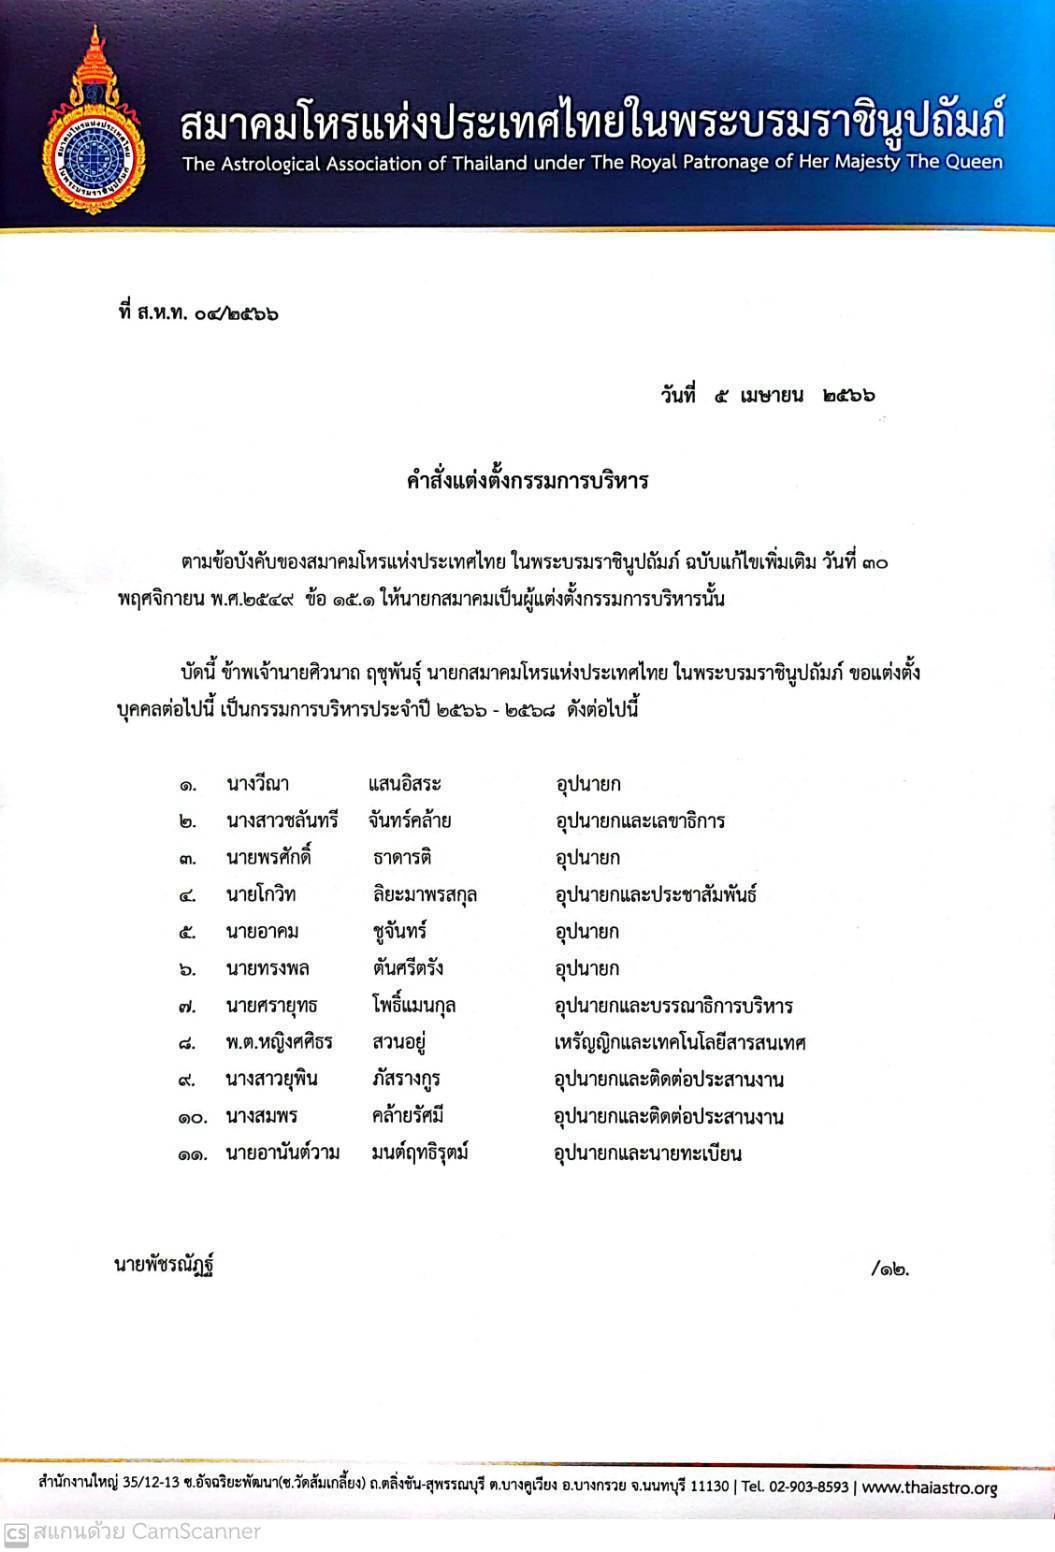 แต่งตั้งคณะกรรมการ สมาคมโหรแห่งประเทศไทย ในพระบรมราชินูปถัมภ์ ปี 2566-2568